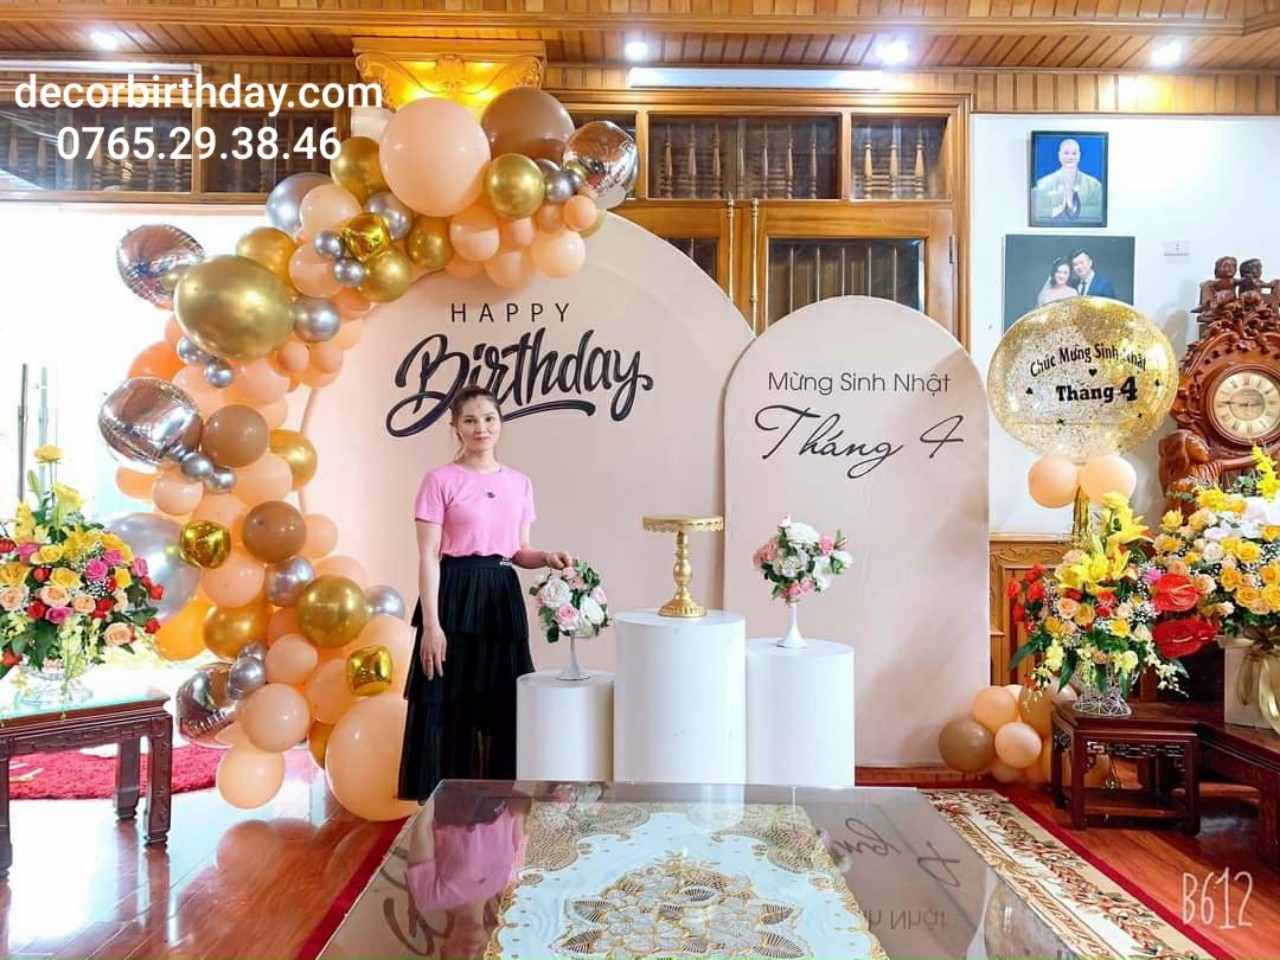 Trang trí sinh nhật cho bé: Bạn đang muốn tạo ra bữa tiệc sinh nhật thật đặc biệt cho con yêu của mình? Hãy cùng chiêm ngưỡng những hình ảnh trang trí sinh nhật cho bé vô cùng dễ thương và đầy màu sắc để tìm ra ý tưởng hoàn hảo cho buổi tiệc của bạn!